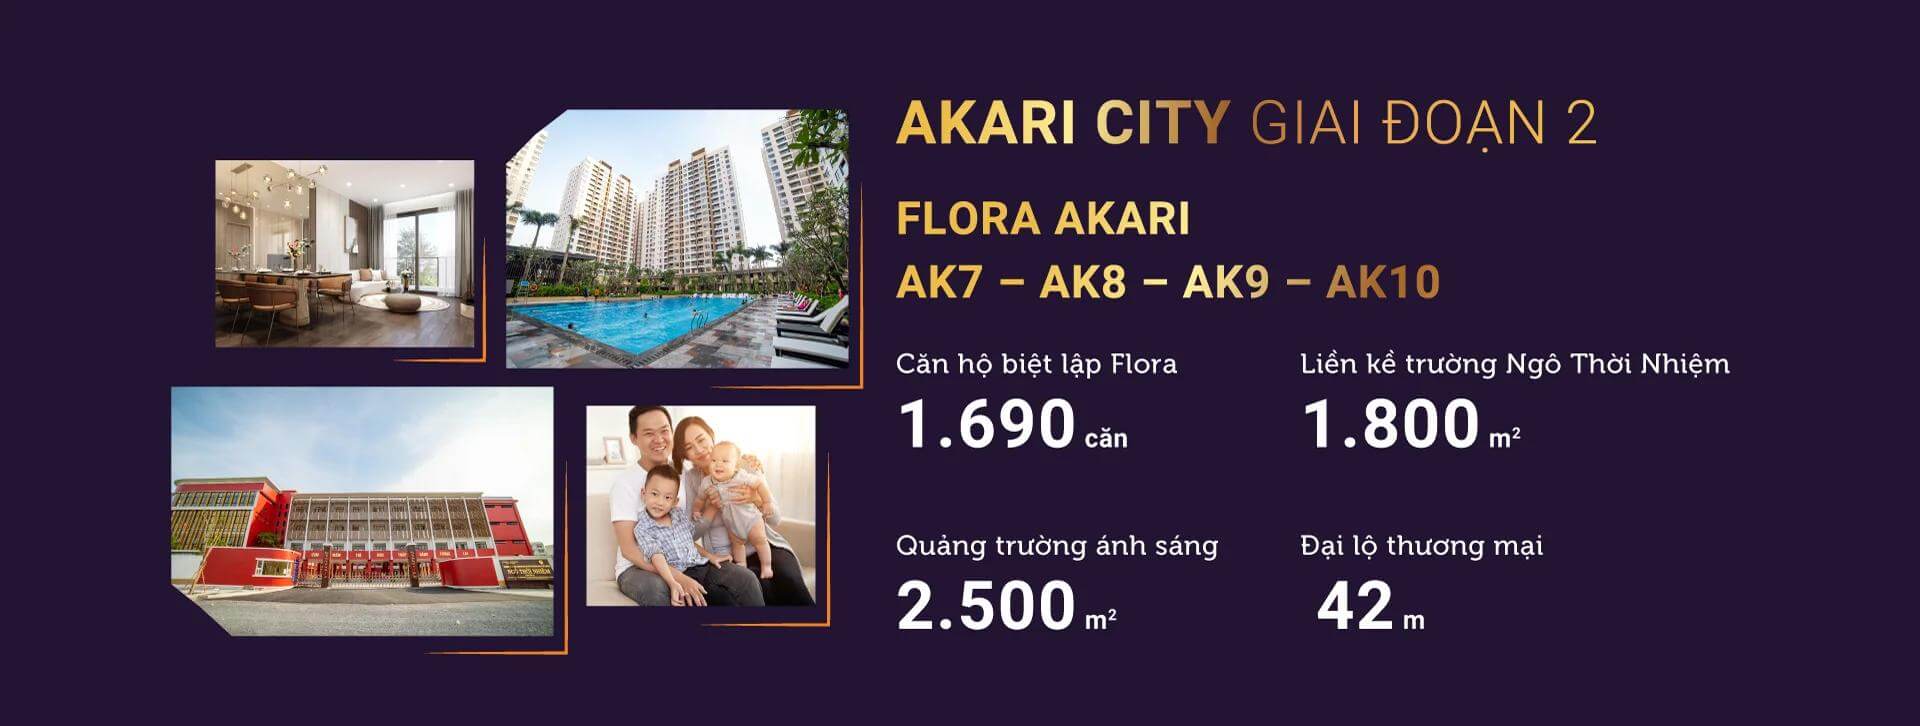 Giá bán Akari City giai đoạn 2 